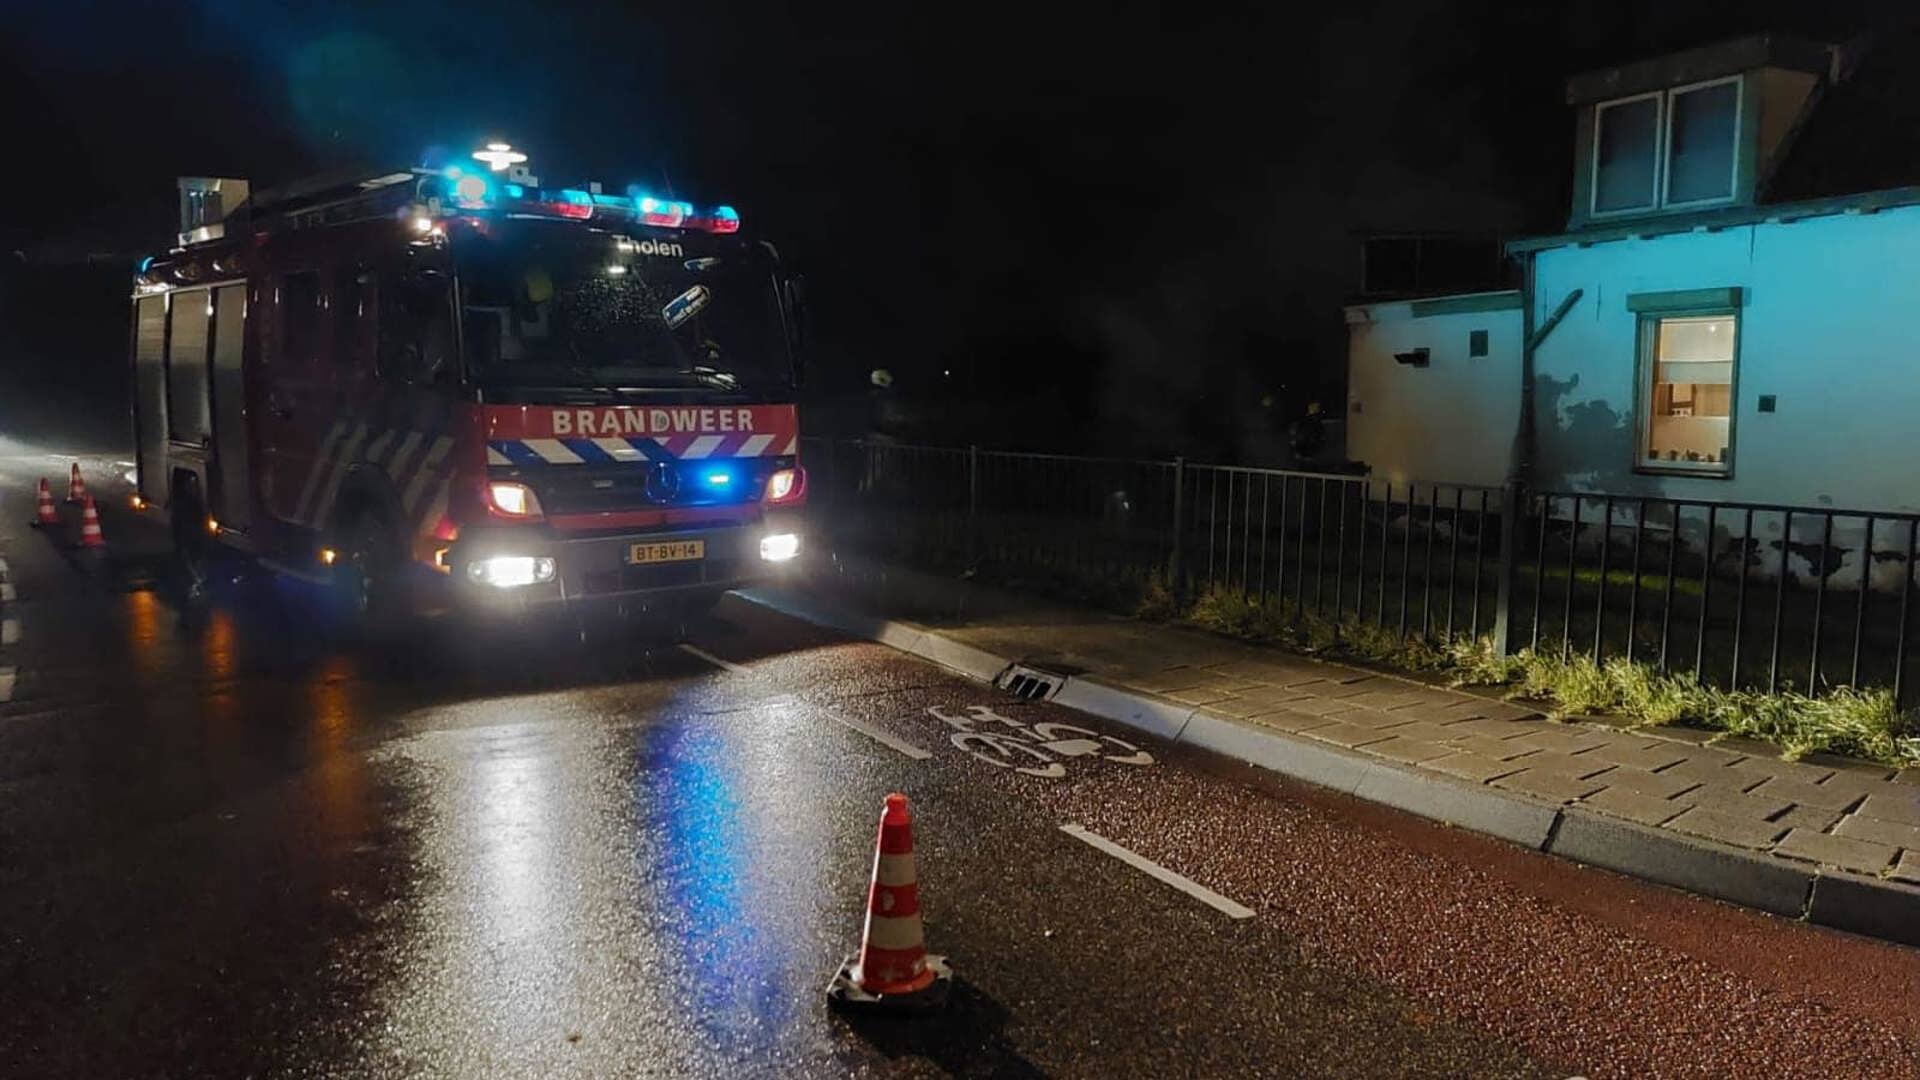 De brandweer moest een uur na de jaarwisseling uitrukken naar Oud-Vossemeer voor een brand.